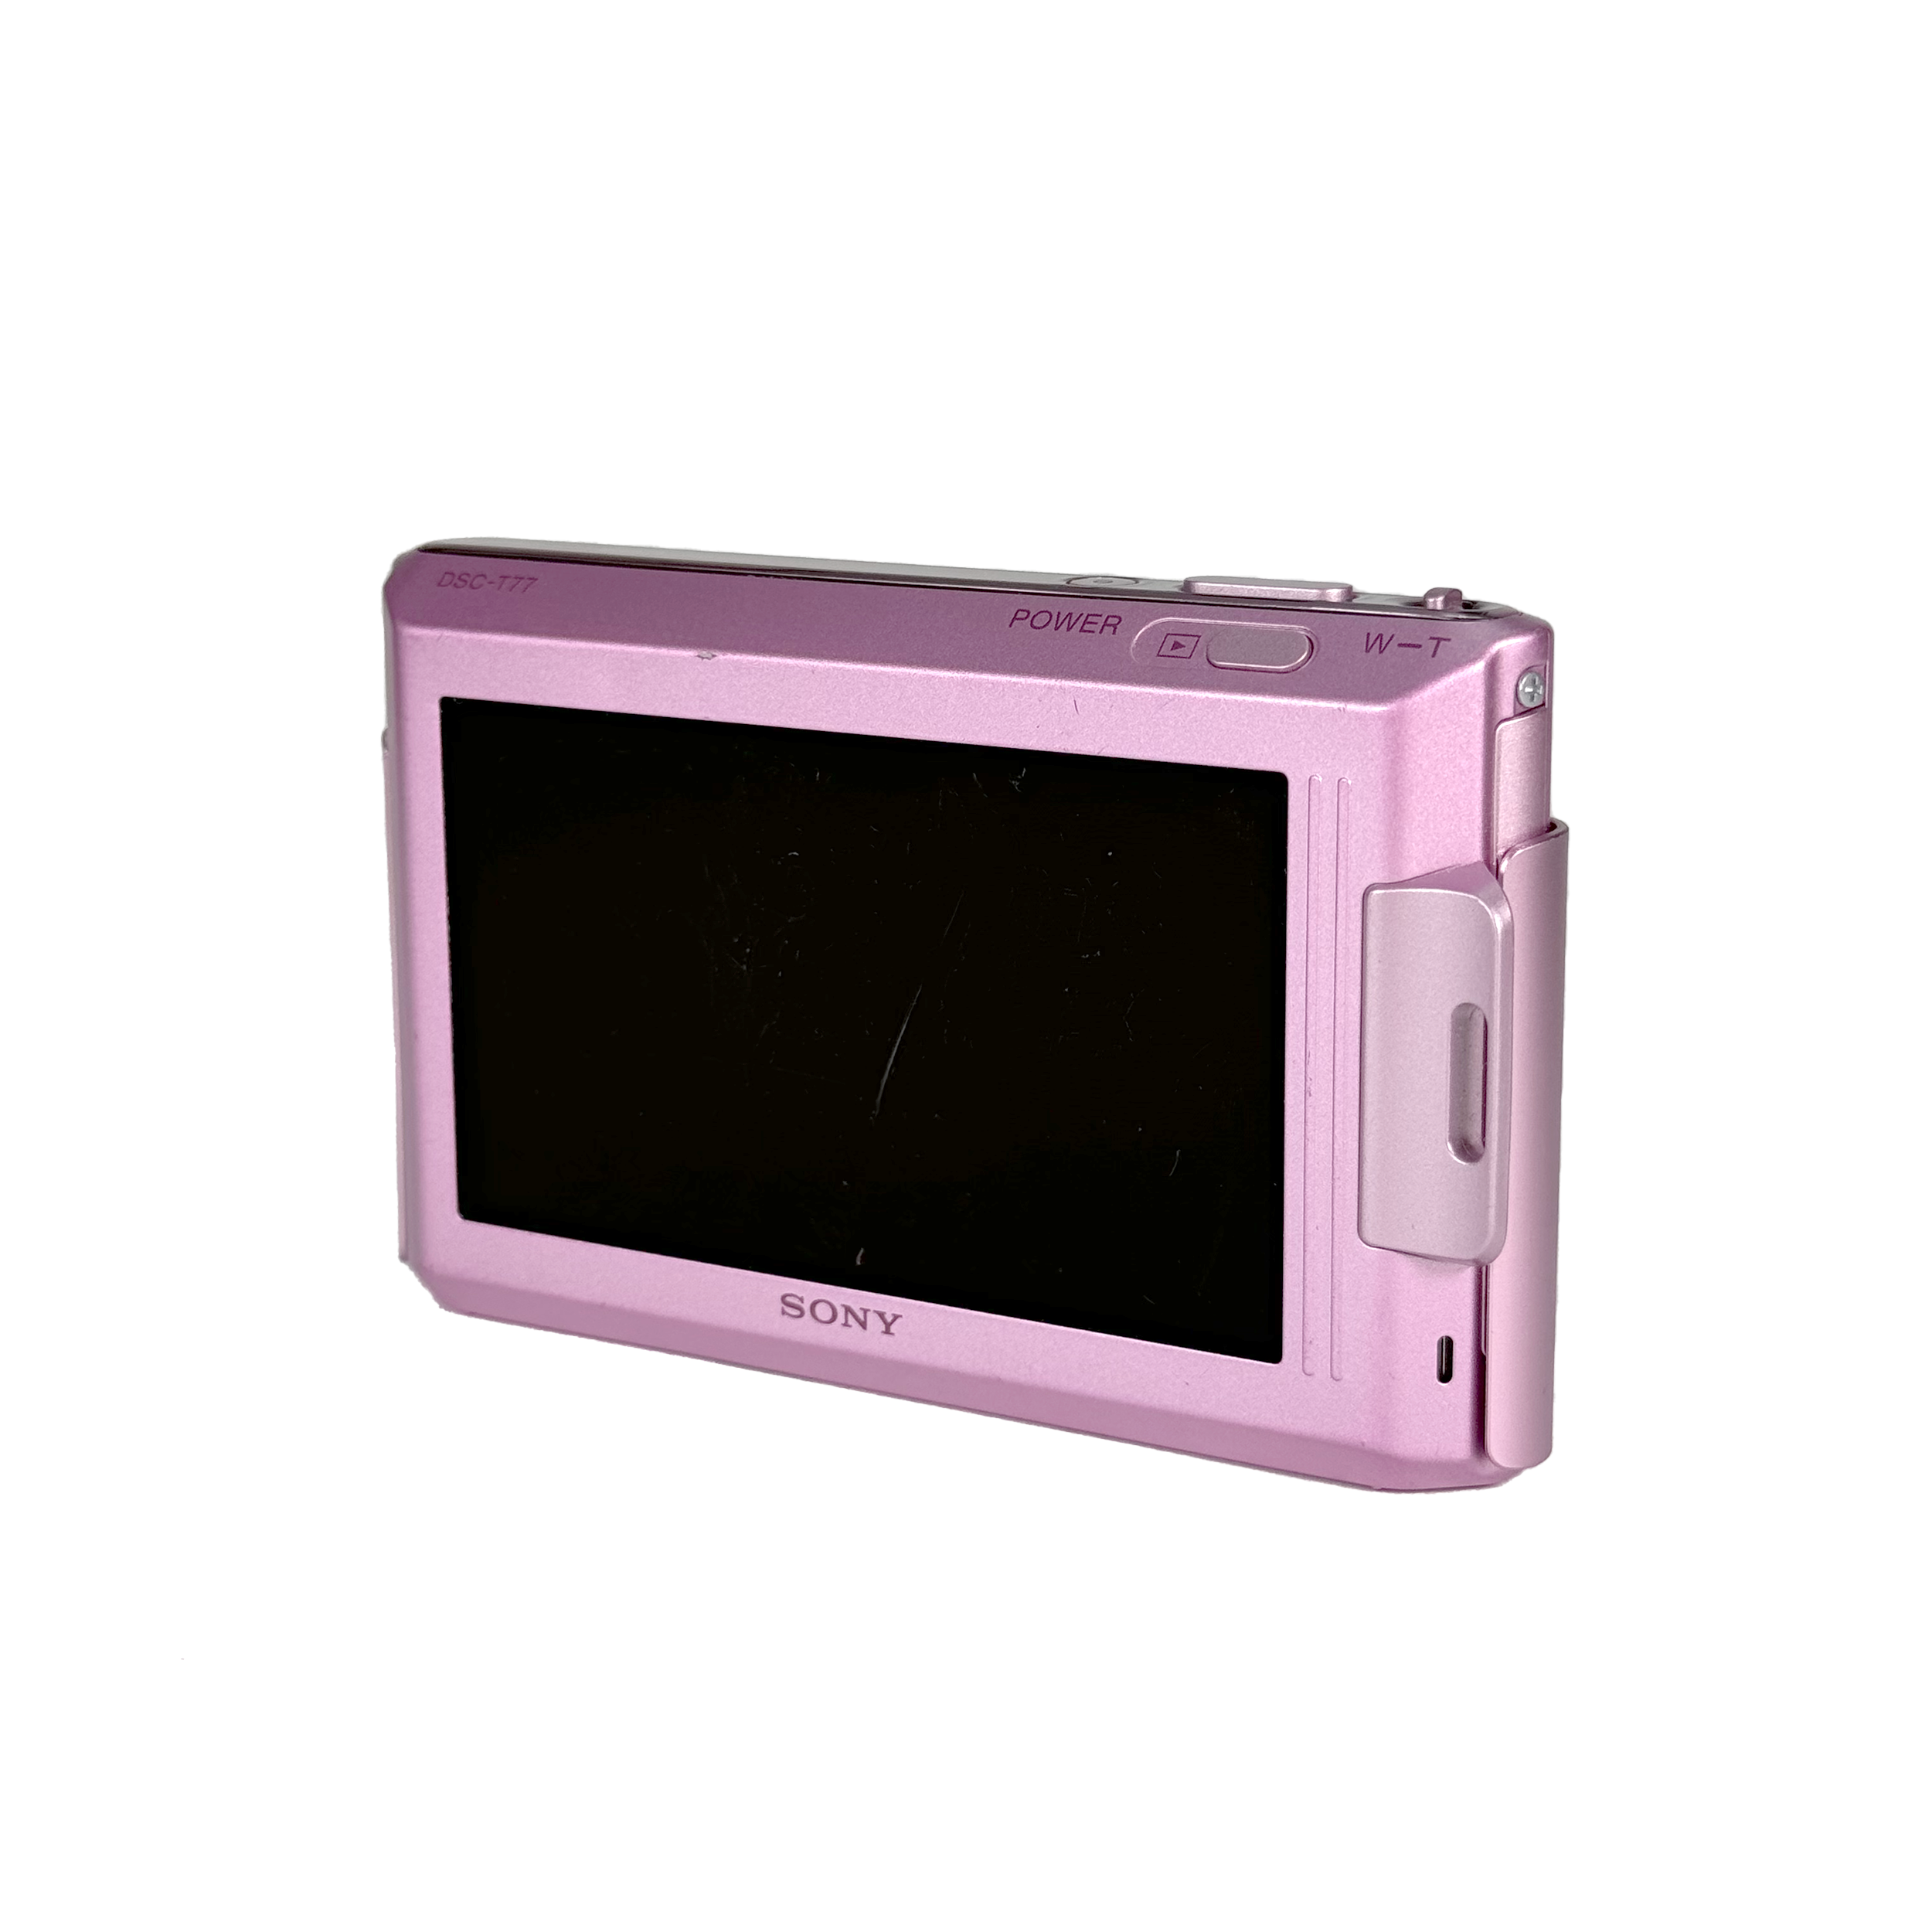 Sony Cybershot DSC-T77 Digital Compact - Pink